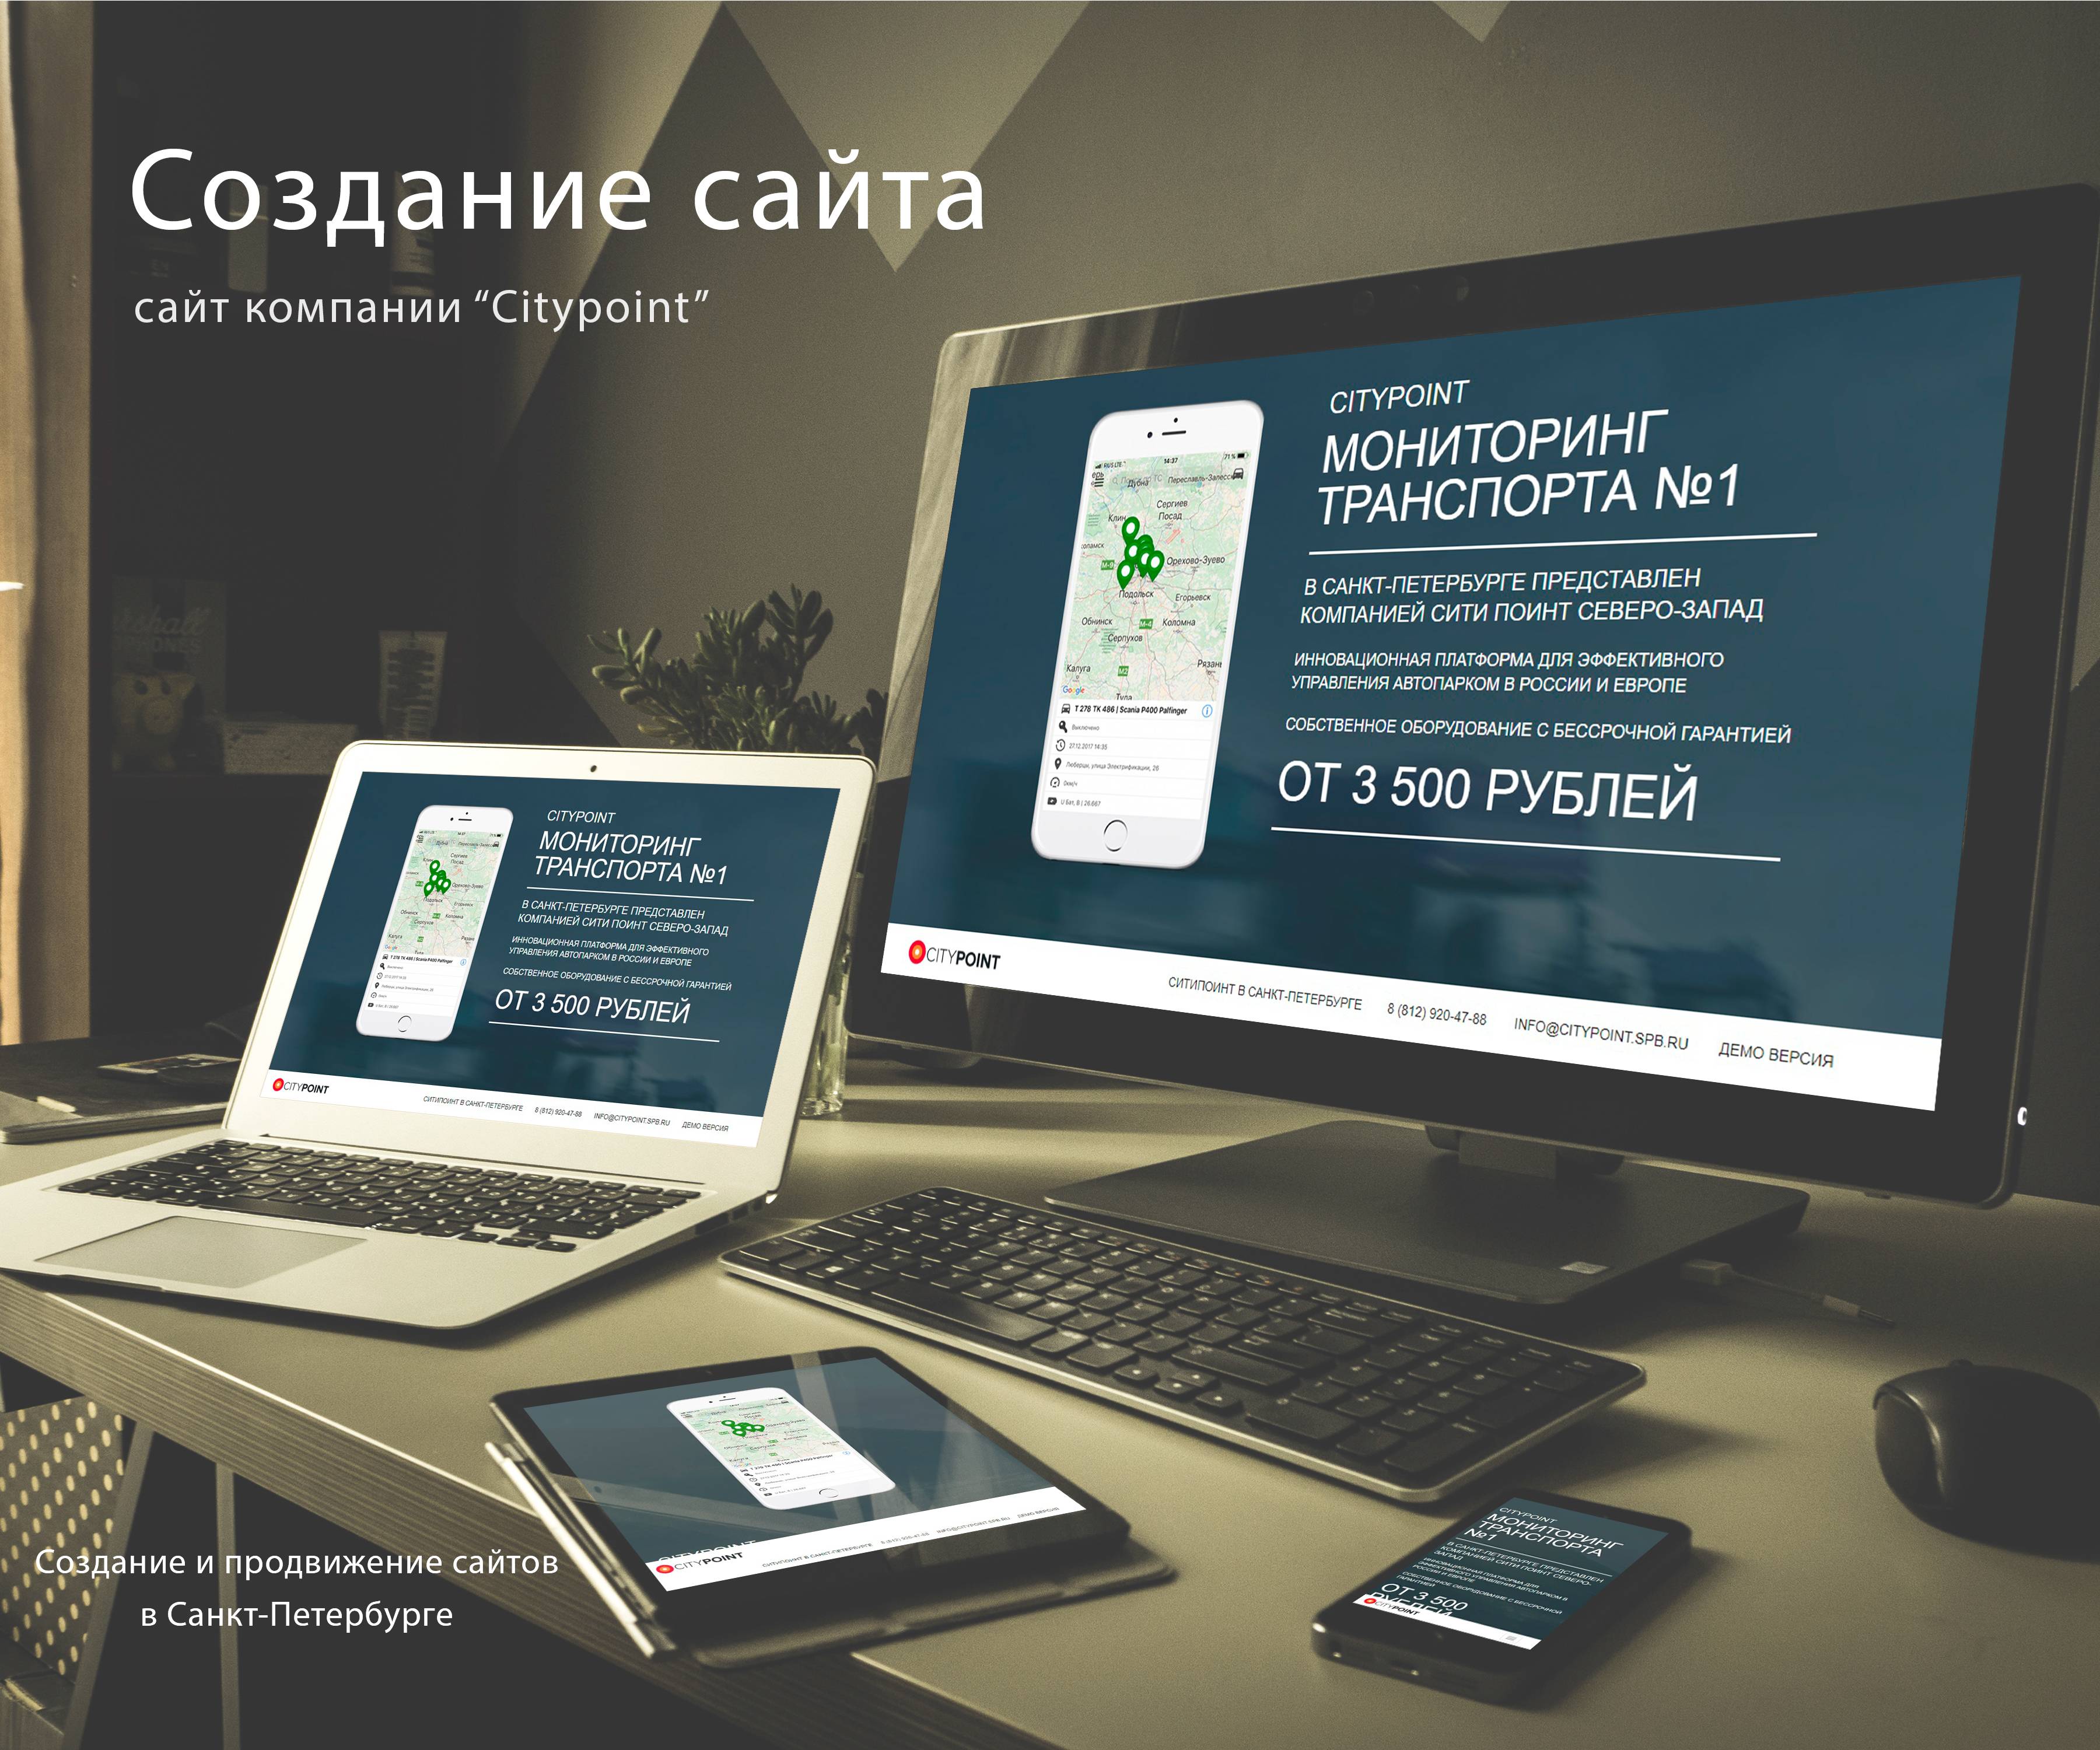 Создание сайтов в москве под ключ уверенно